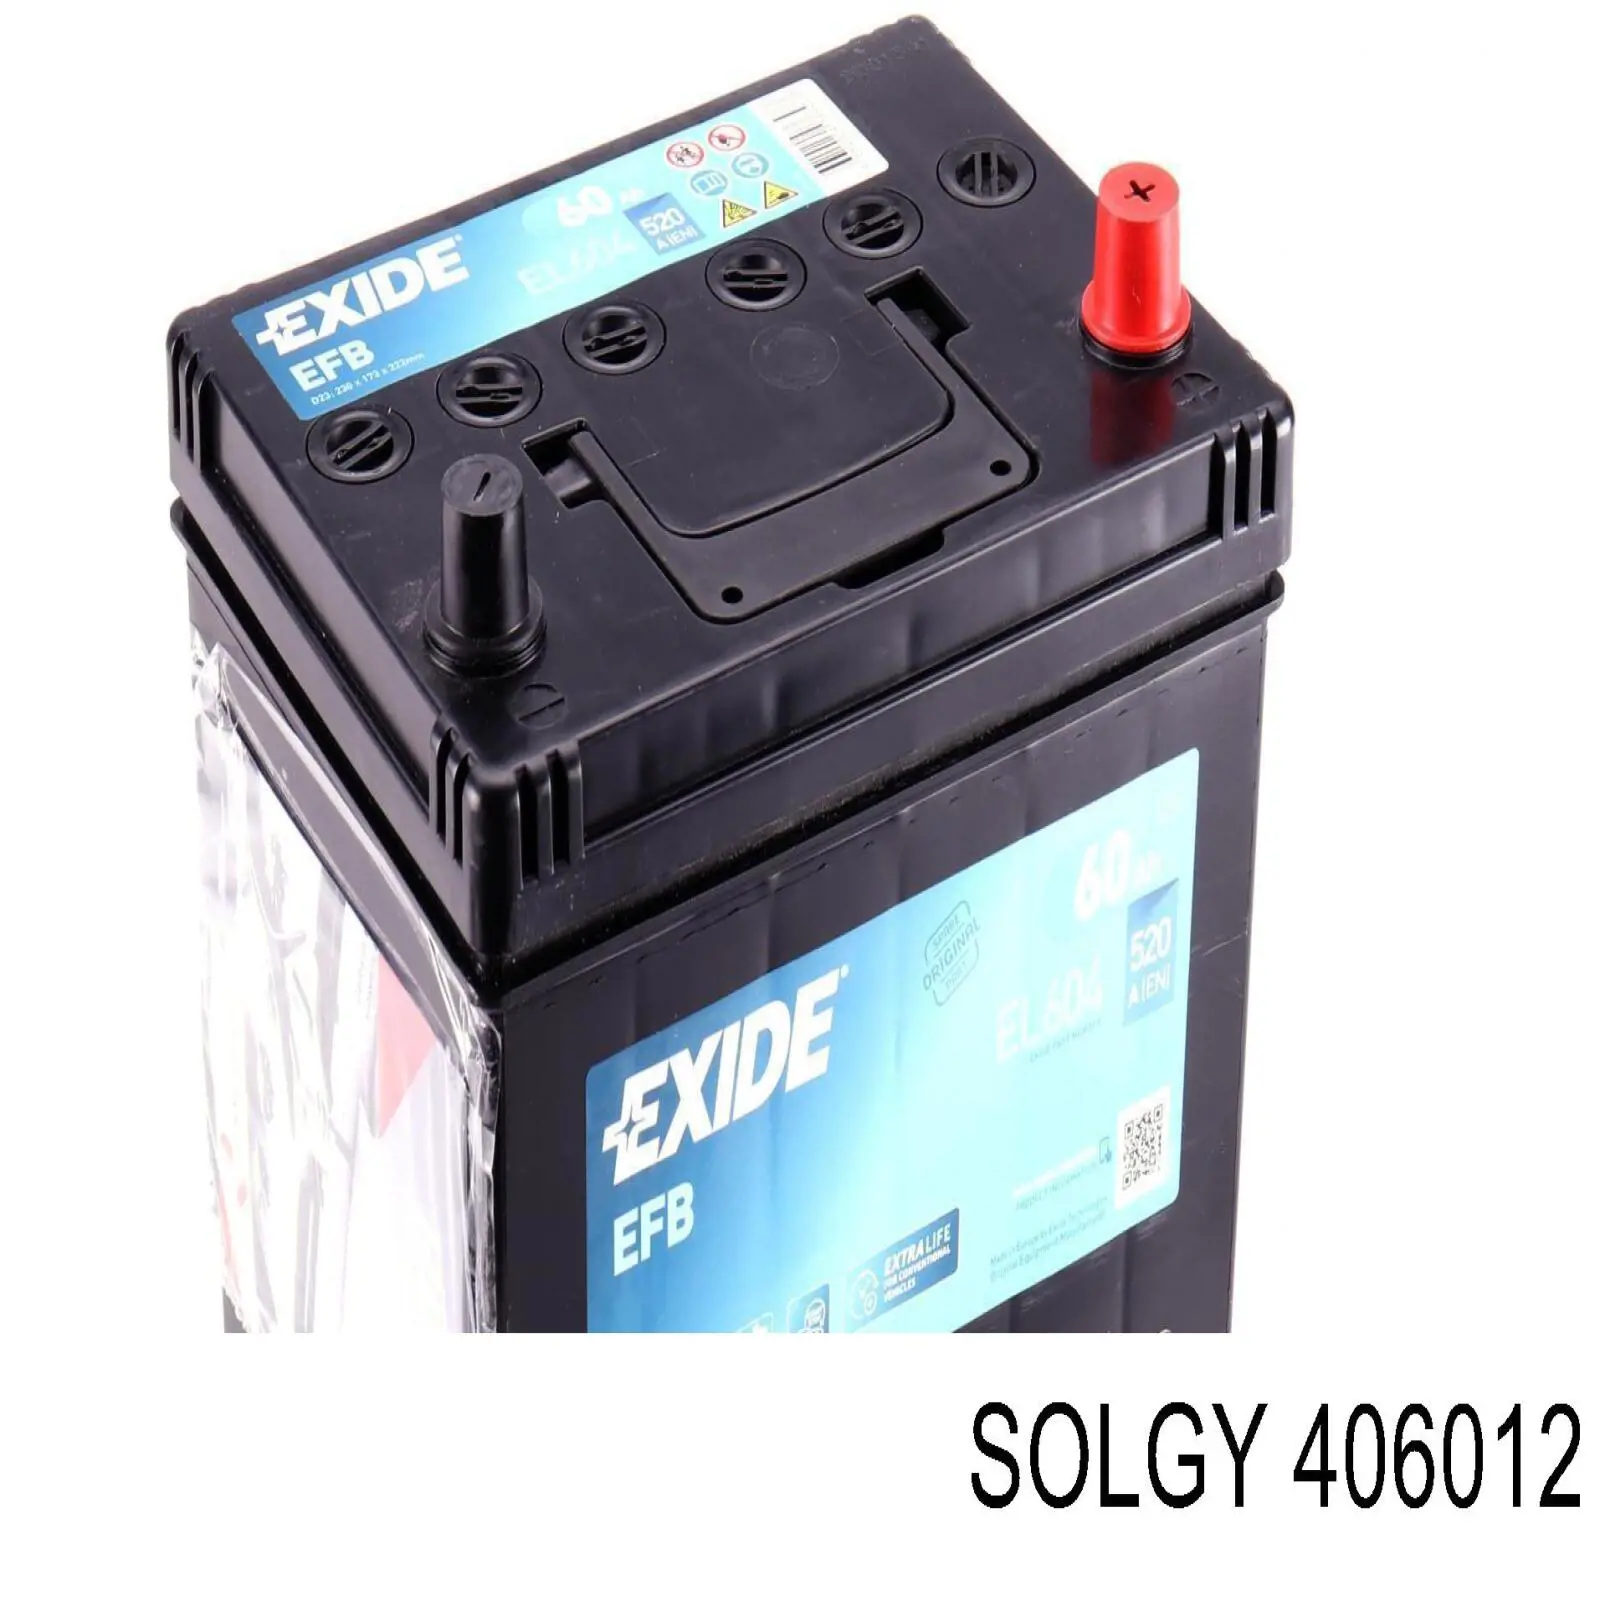 406012 Solgy bateria recarregável (pilha)